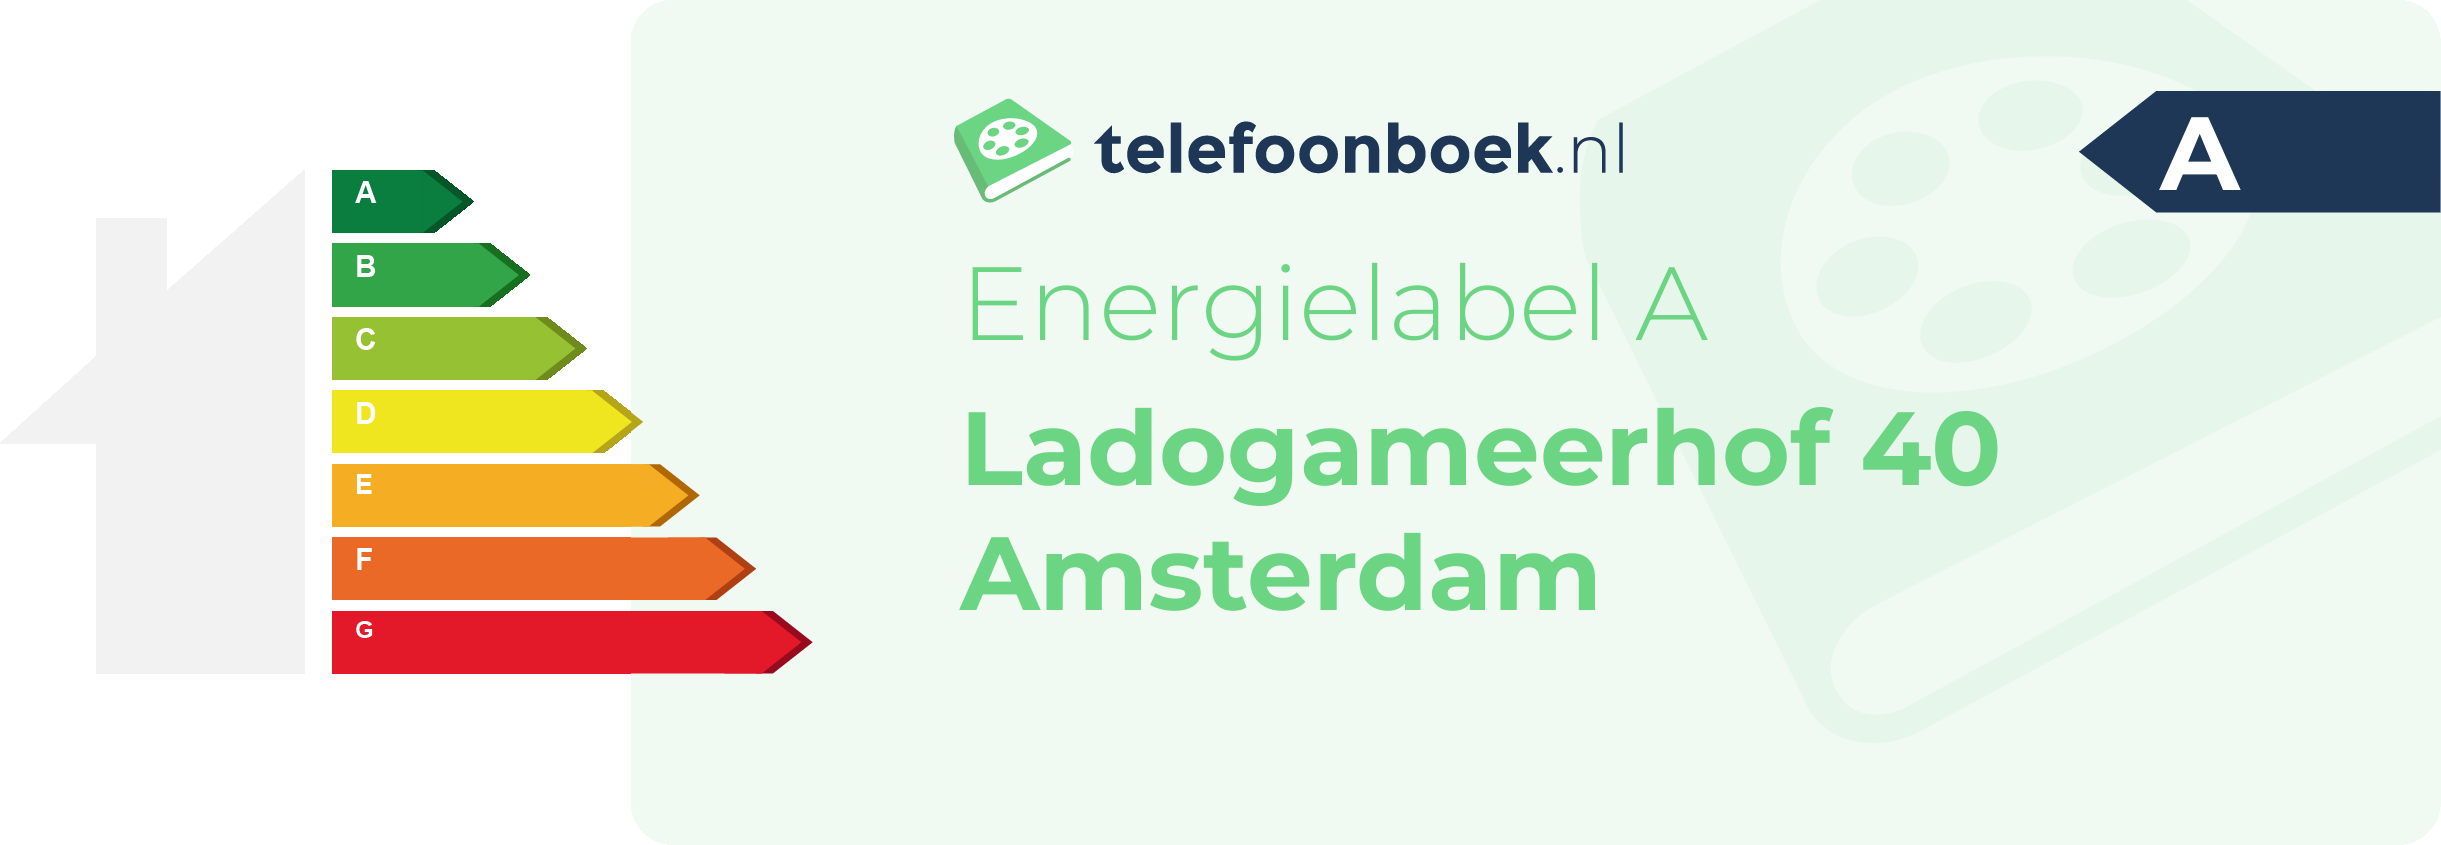 Energielabel Ladogameerhof 40 Amsterdam